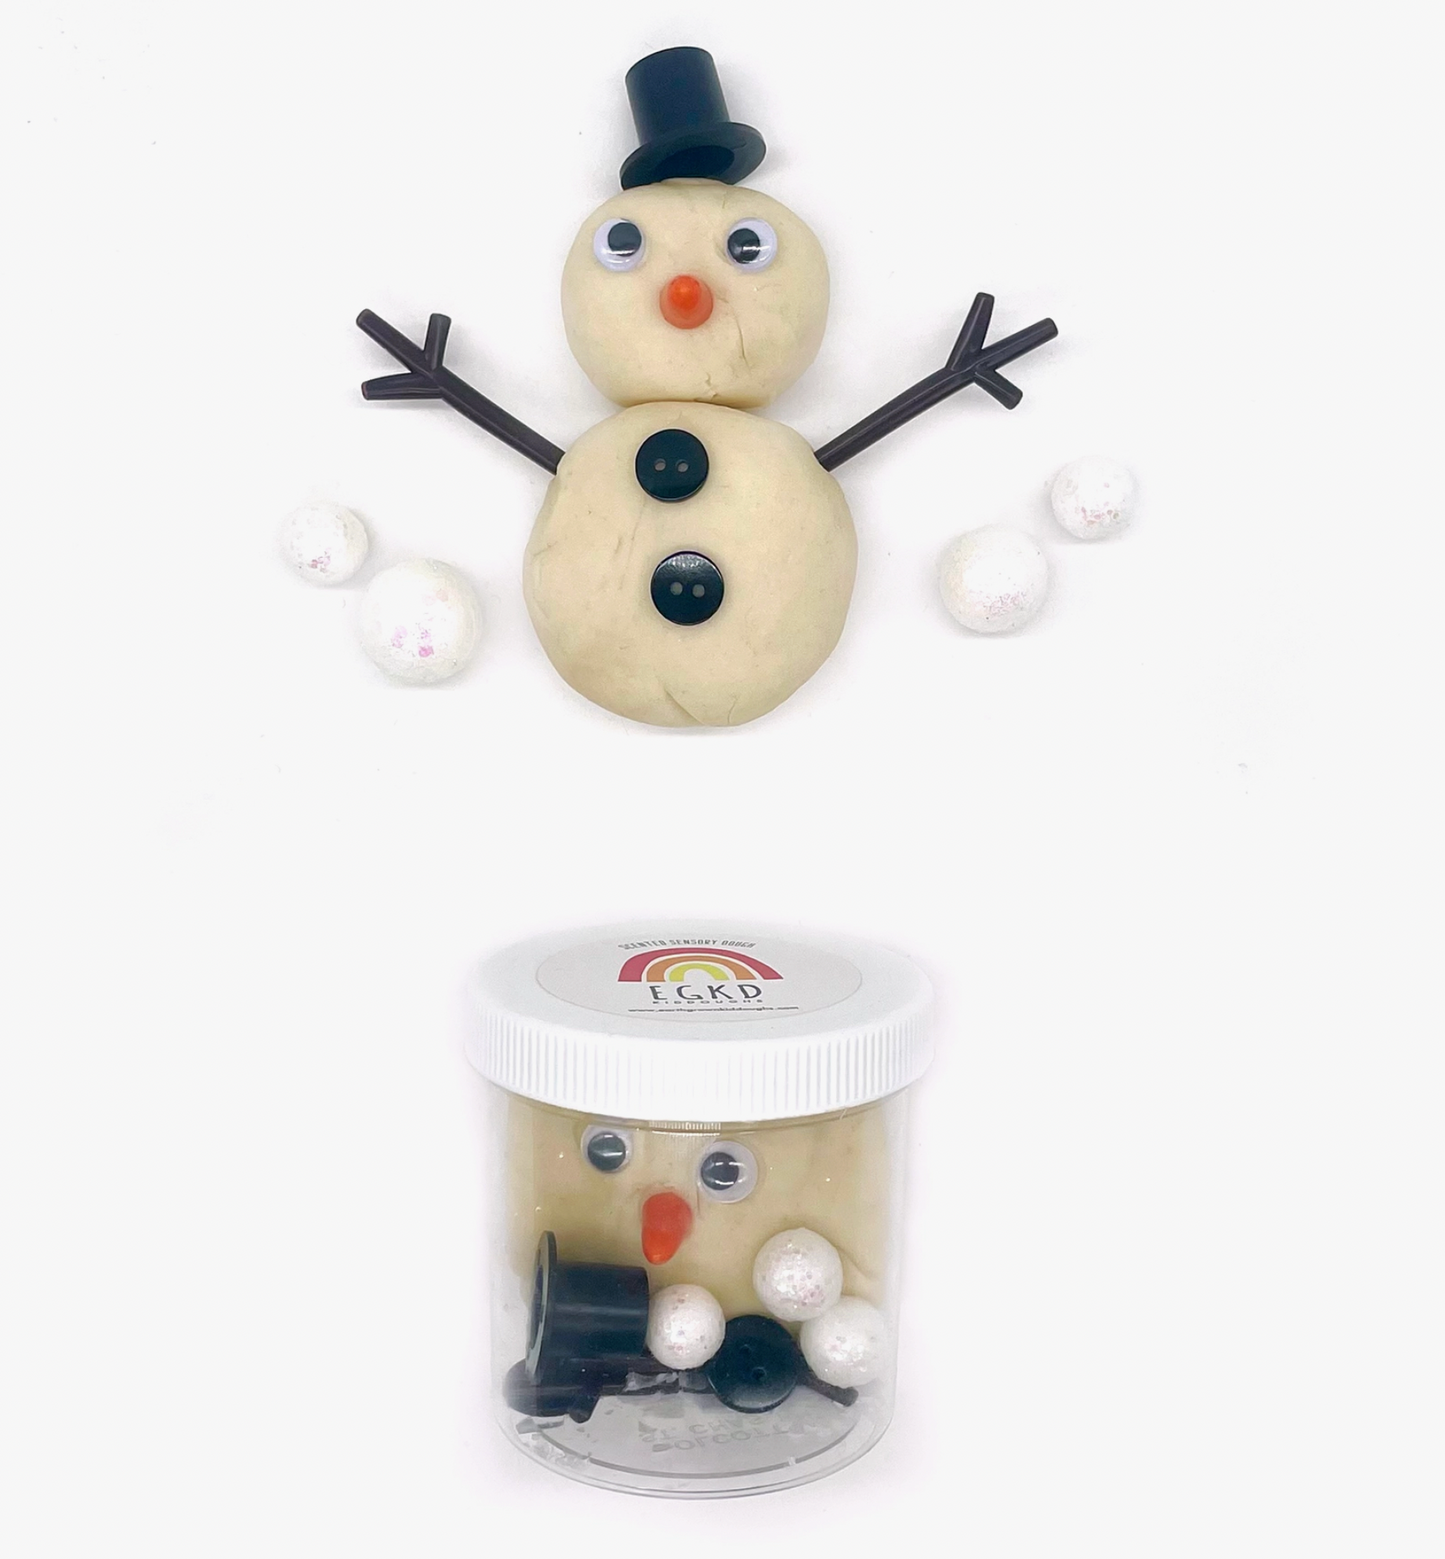 Play Dough Kit, Play Dough Snowman Making Kit, Snowman Play Dough